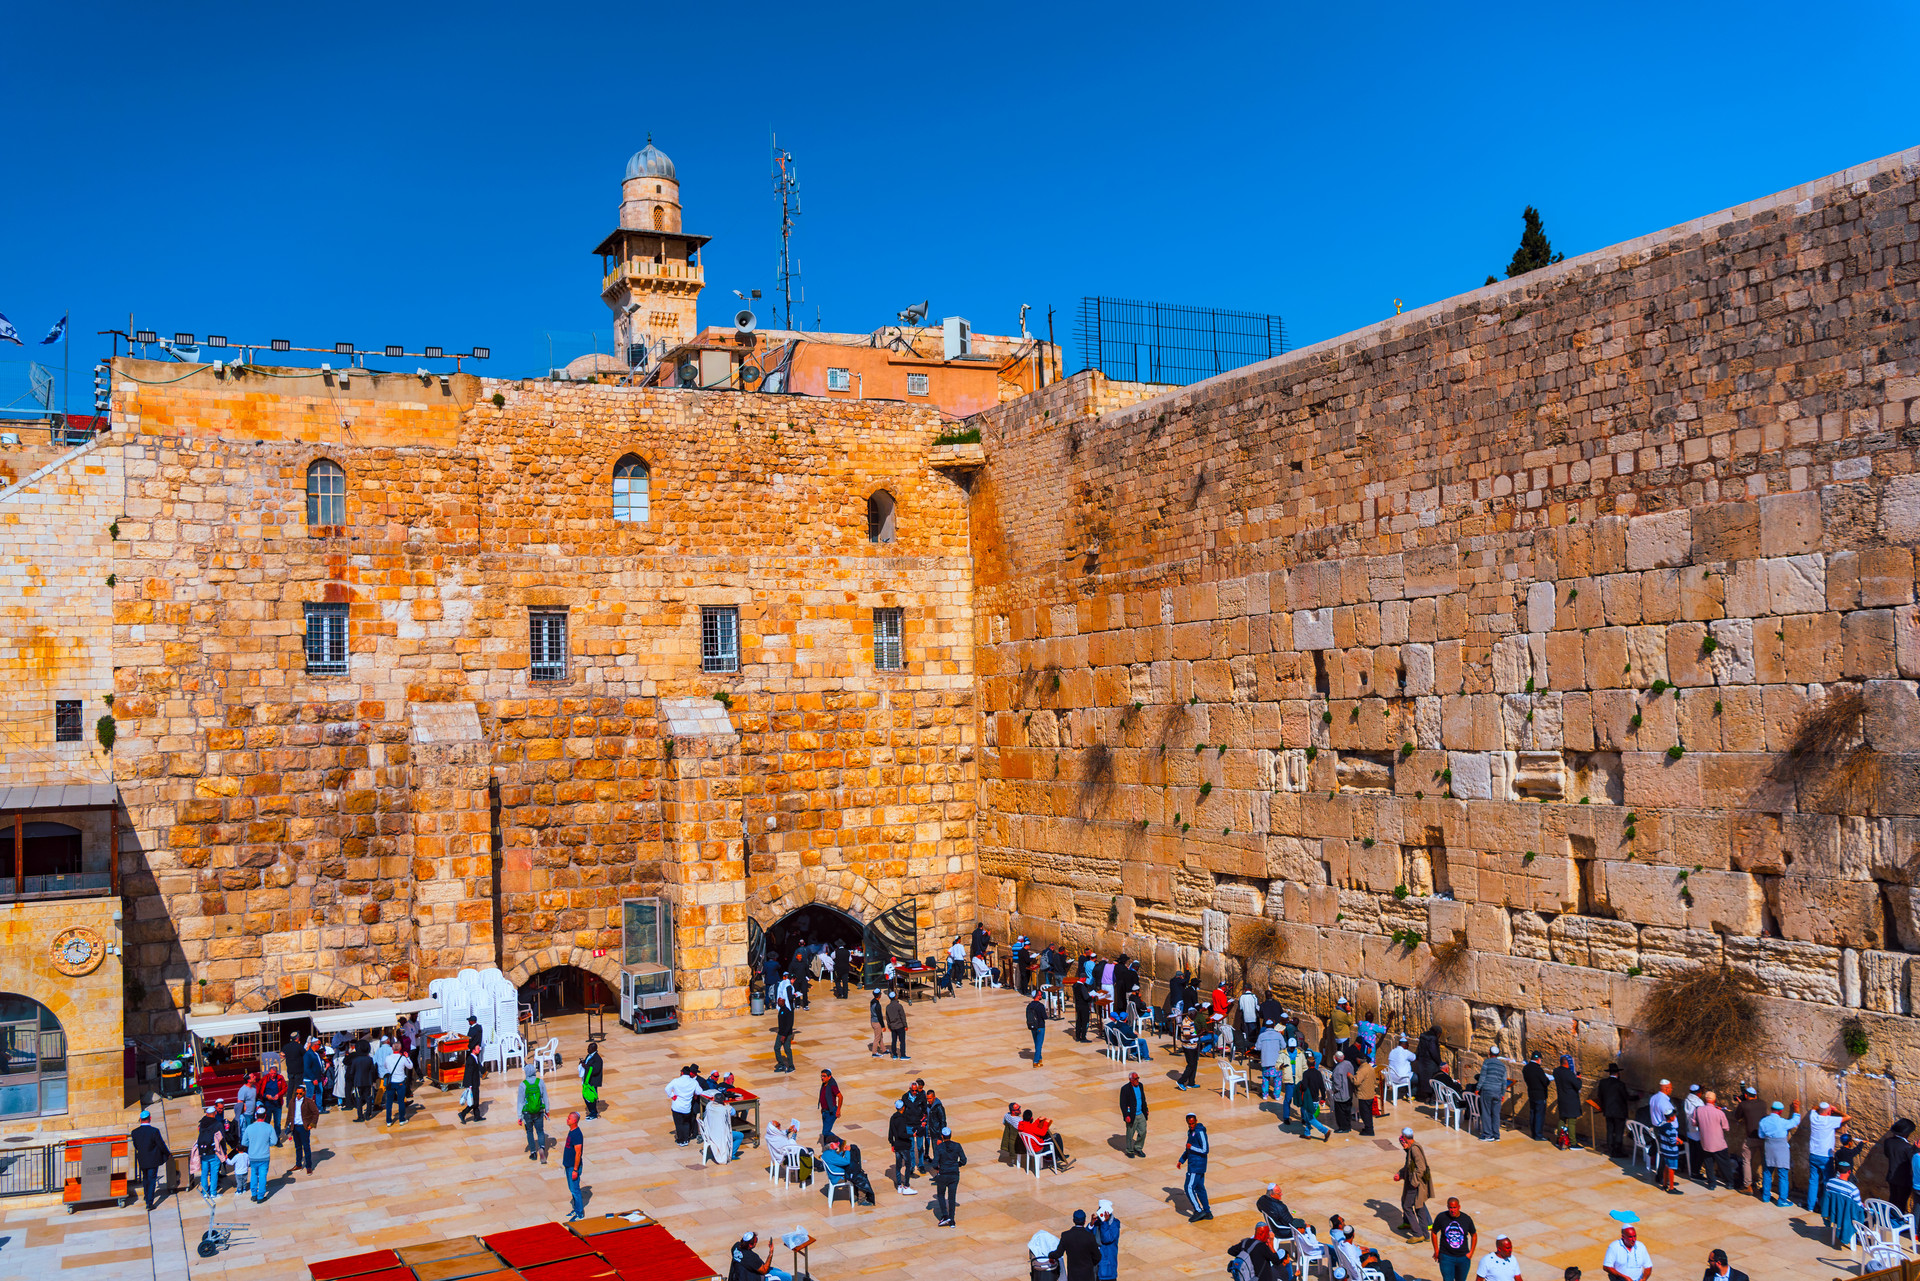 【携程攻略】耶路撒冷哭墙景点,耶路撒冷的哭墙，不仅仅只有悲壮，更多的是传承与希望。纵有千错万错…